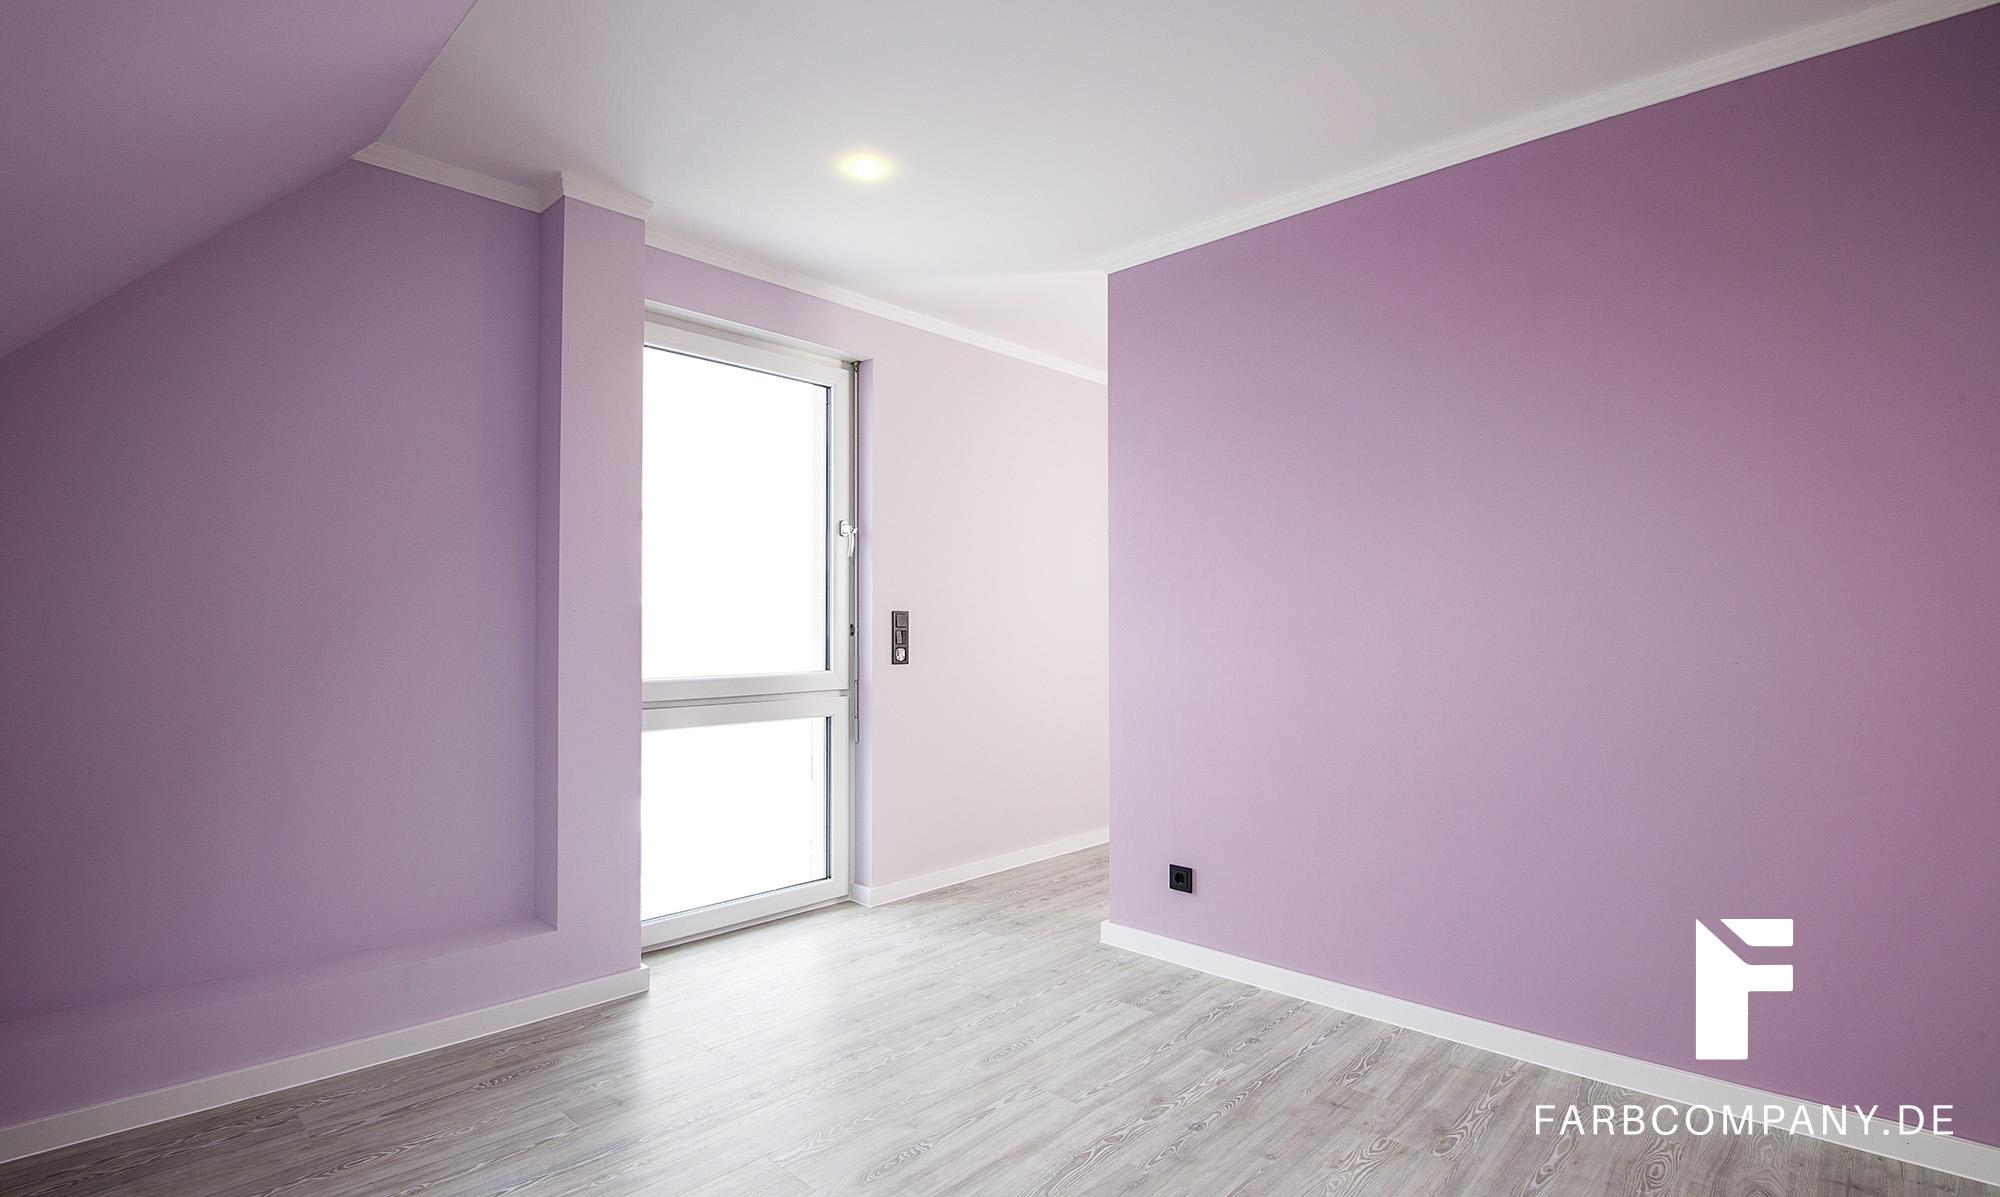 Wände mit Glattvlies/ Schlafzimmer in angenehmen, pastelligen Farbtönen #wandfarbe ©Farbcompany/ Mike Schleupner